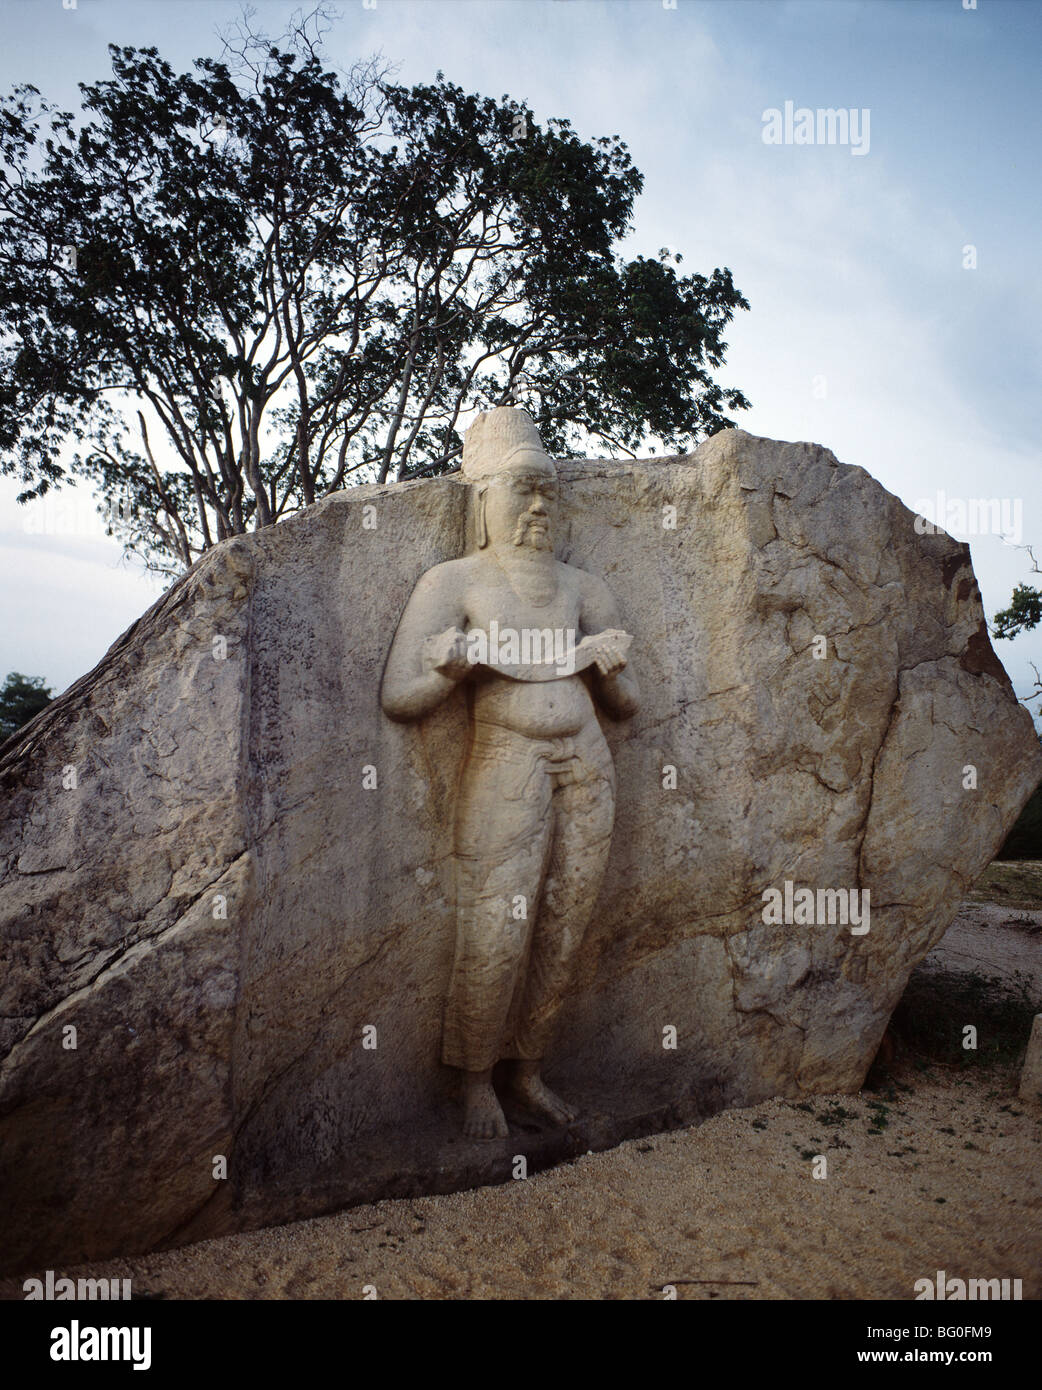 Statue de Parakramabahu le Grand, roi médiéval, responsable de l'unification de l'île au 12ème siècle, Polonnaruwa, Sri Lanka Banque D'Images